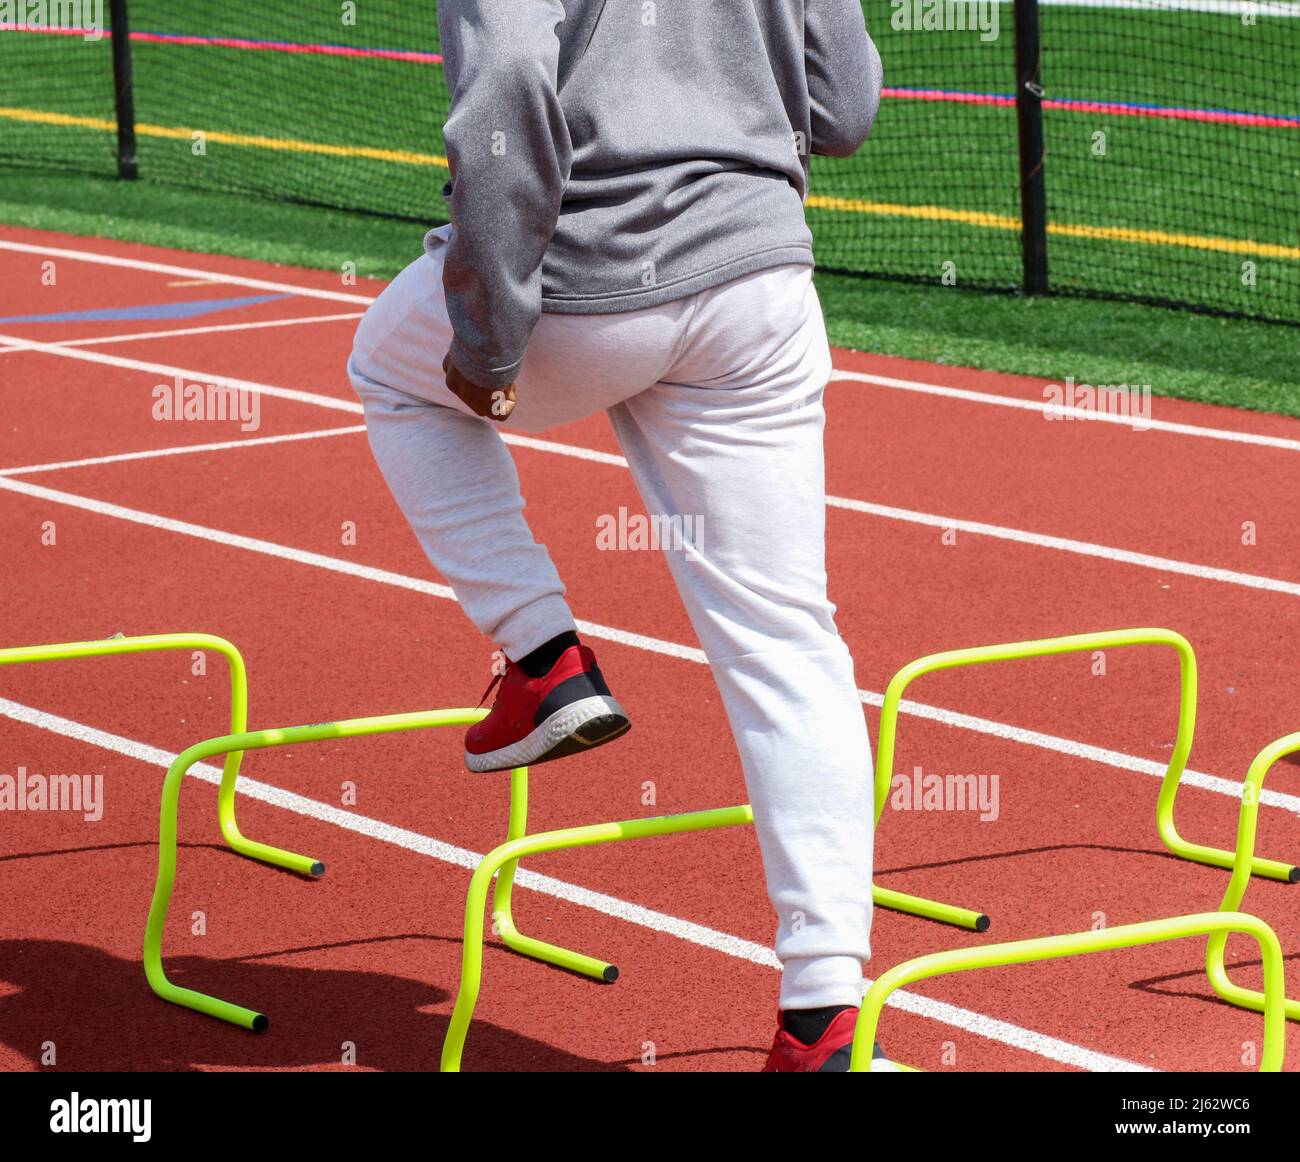 Vue arrière d'un garçon d'école secondaire debout au-dessus des haies jaunes sur une piste rouge en train de faire des exercices d'entraînement sportif pendant l'entraînement sur piste. Banque D'Images